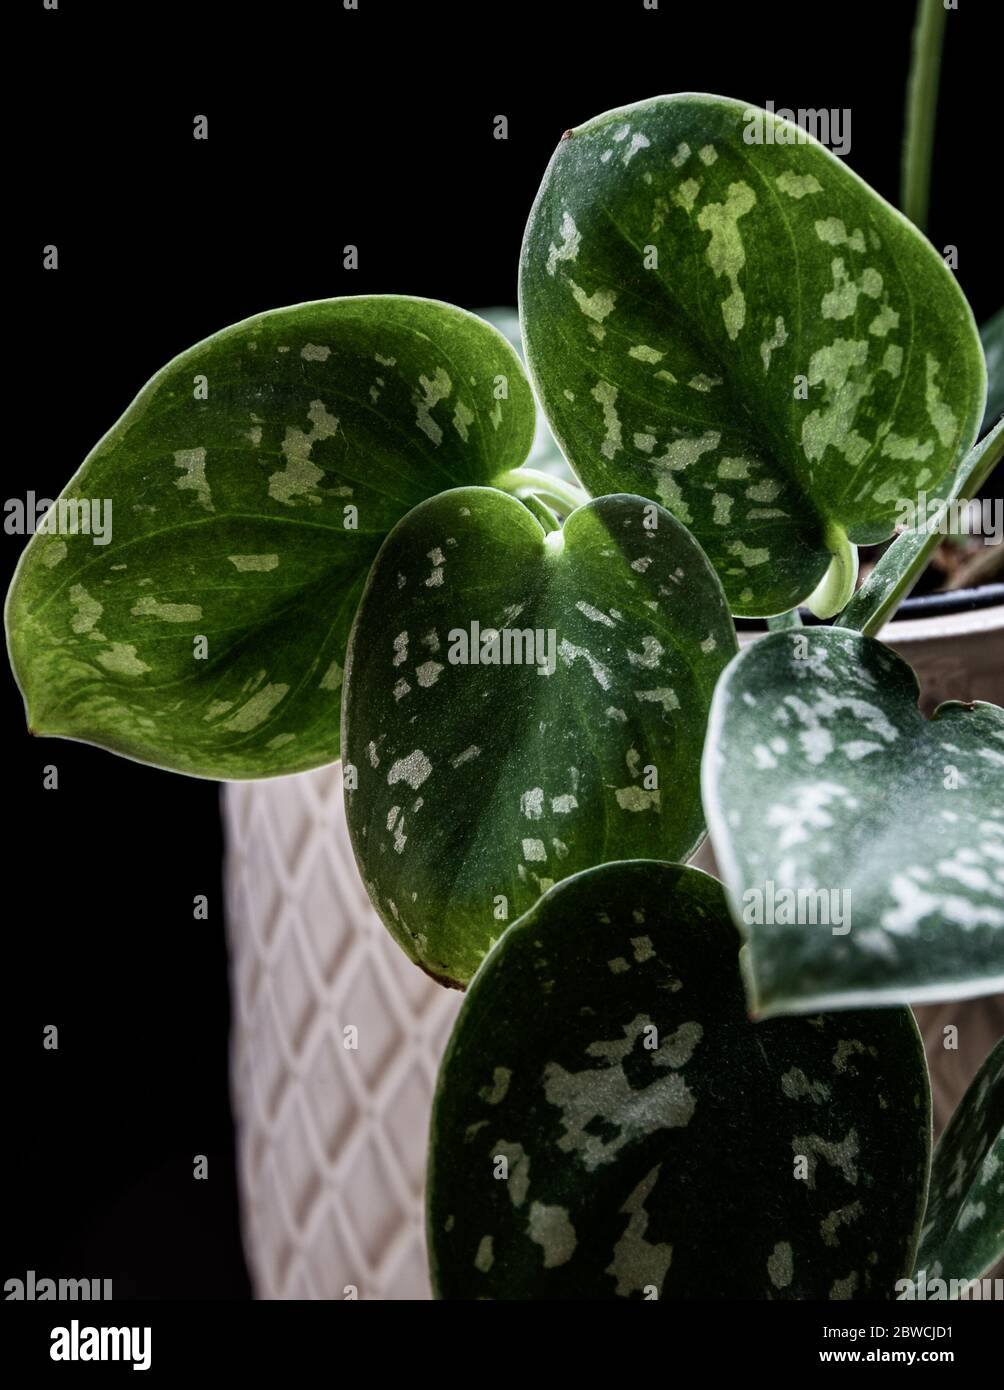 Pothos satiné (Scindapsus pictus 'Argyraeus') plante à la maison avec feuilles floues sur fond sombre. Magnifique détail de plantes de derrière sur fond sombre. Banque D'Images